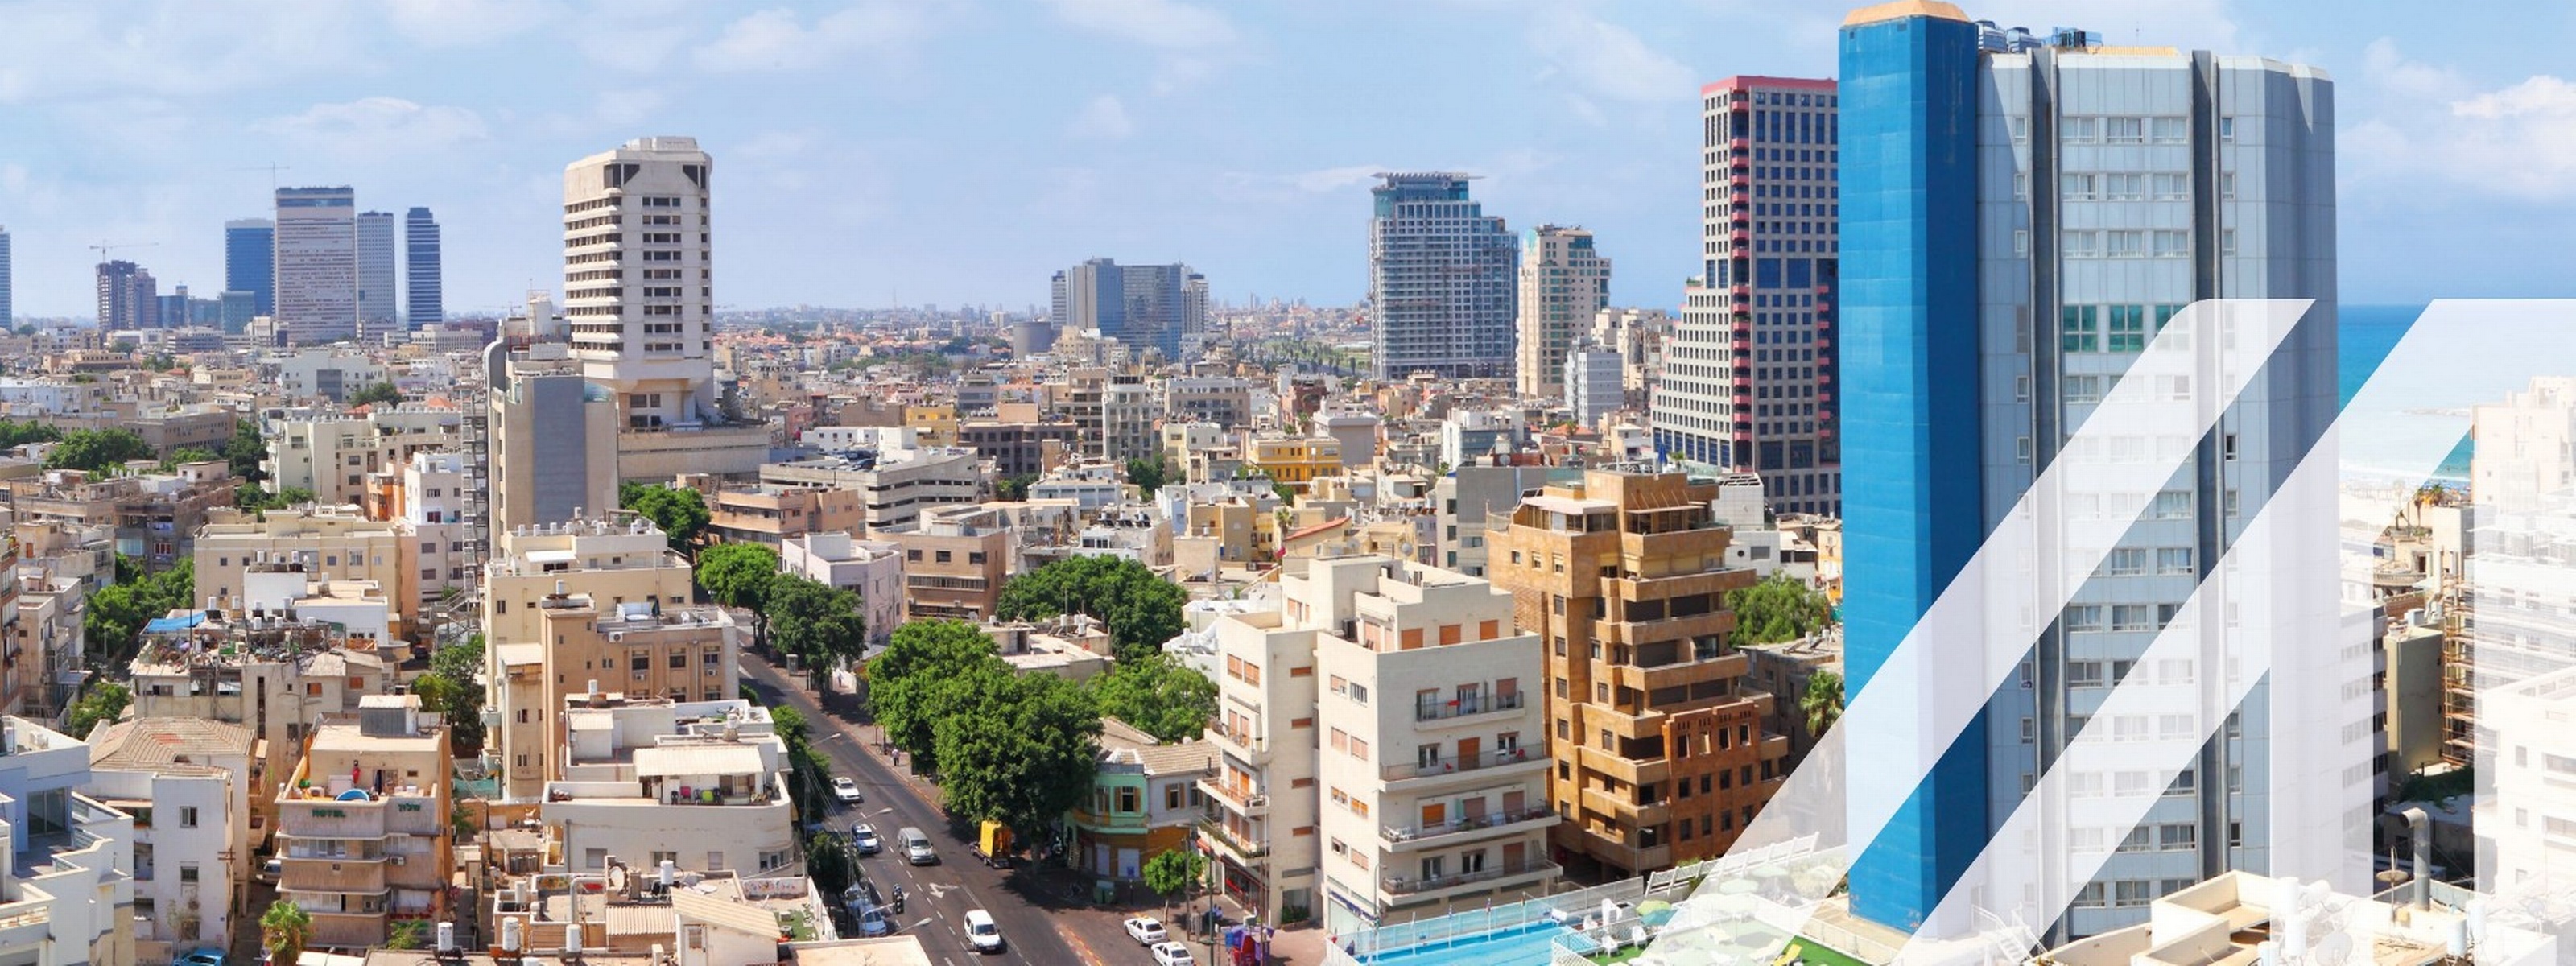 Blick auf eine moderne Stadt mit hohen Gebäude, Wohnhäusern und eine befahrene Straße in Tel Aviv